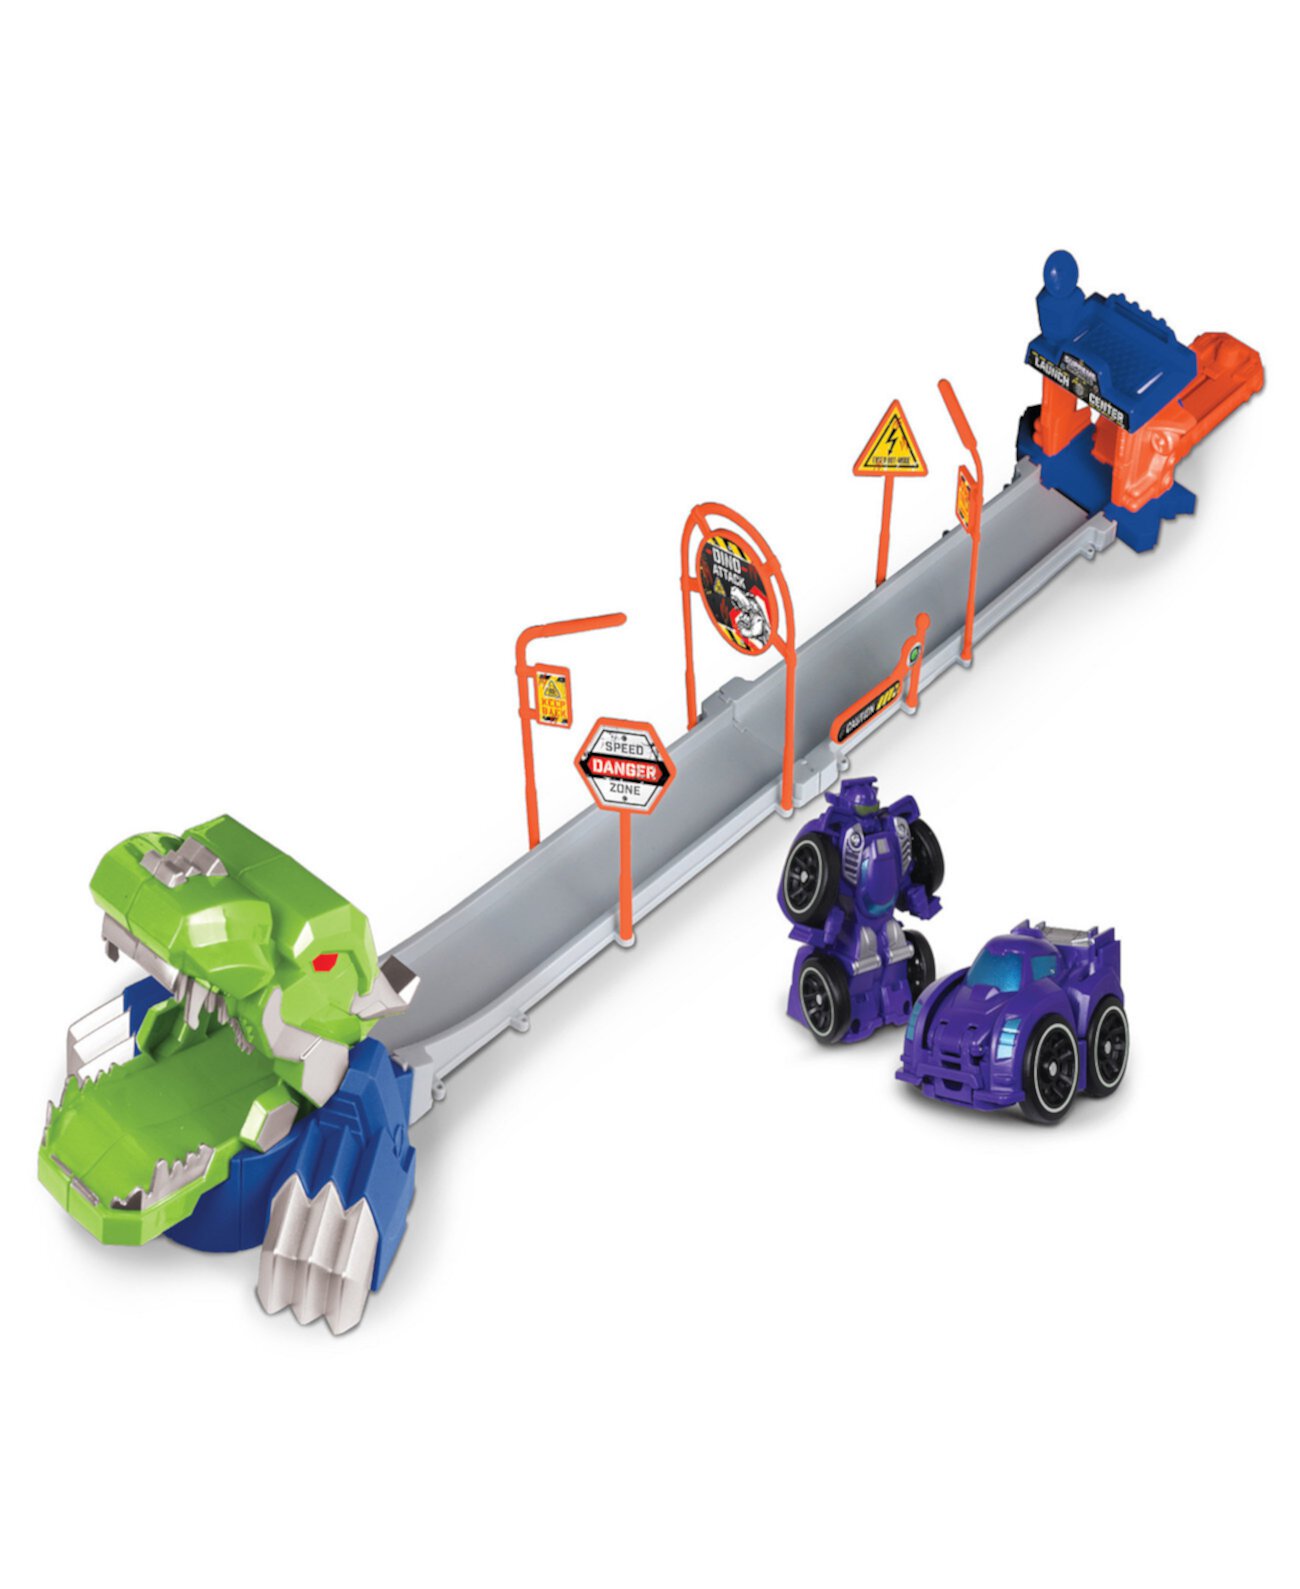 Nkok Attack Launch Track T.Rex Rocket Bot 42021, набор из 17 предметов, фиолетовый автомобиль-робот-трансформер 2-в-1, простая сборка Supreme Machines